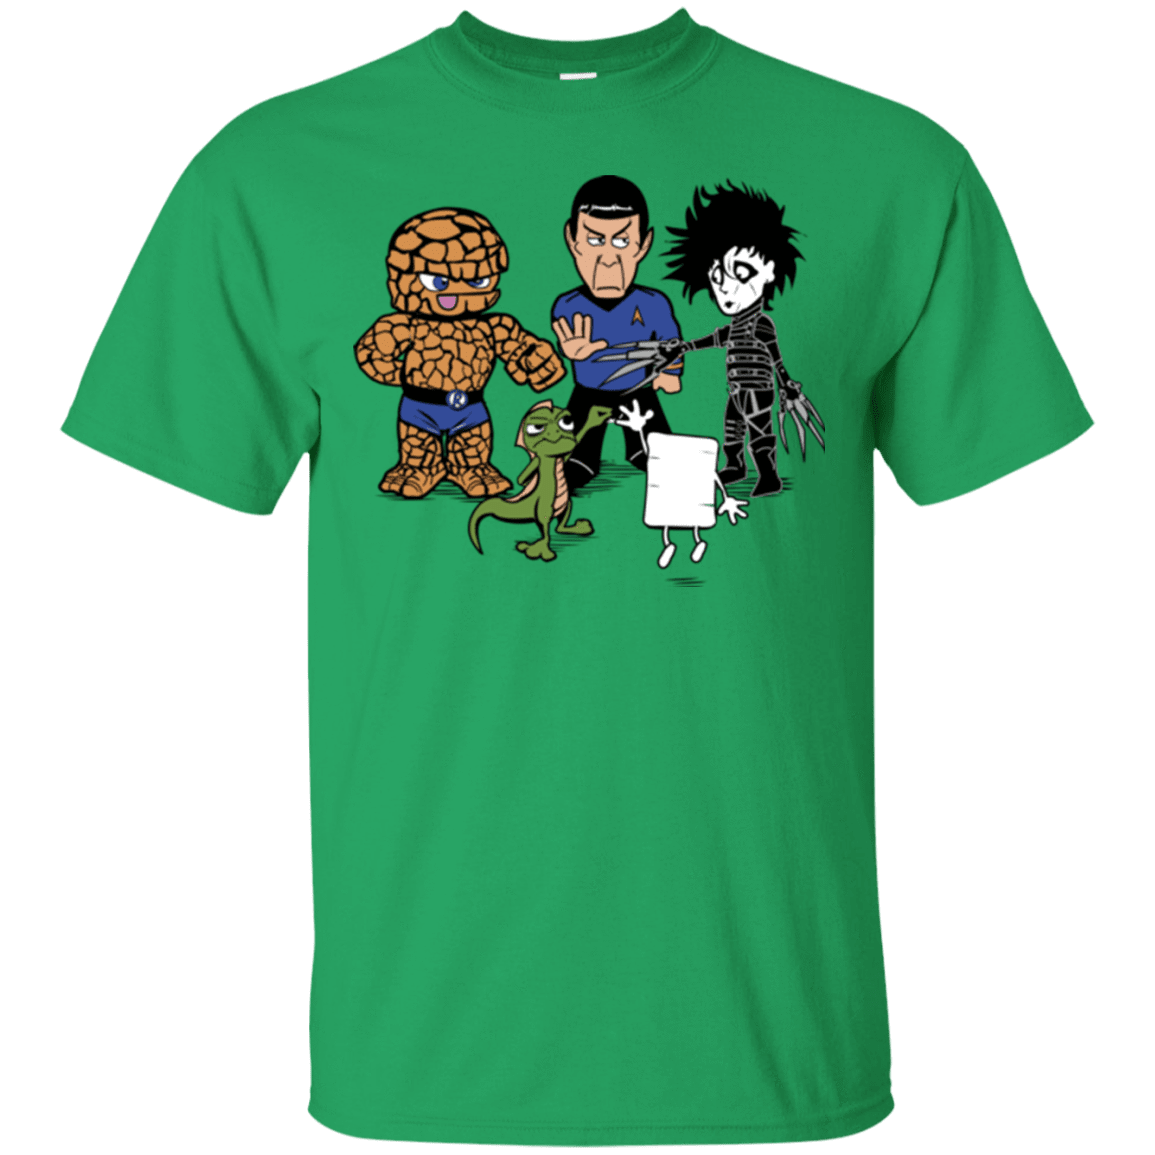 T-Shirts Irish Green / Small Rock Paper Scissors T-Shirt